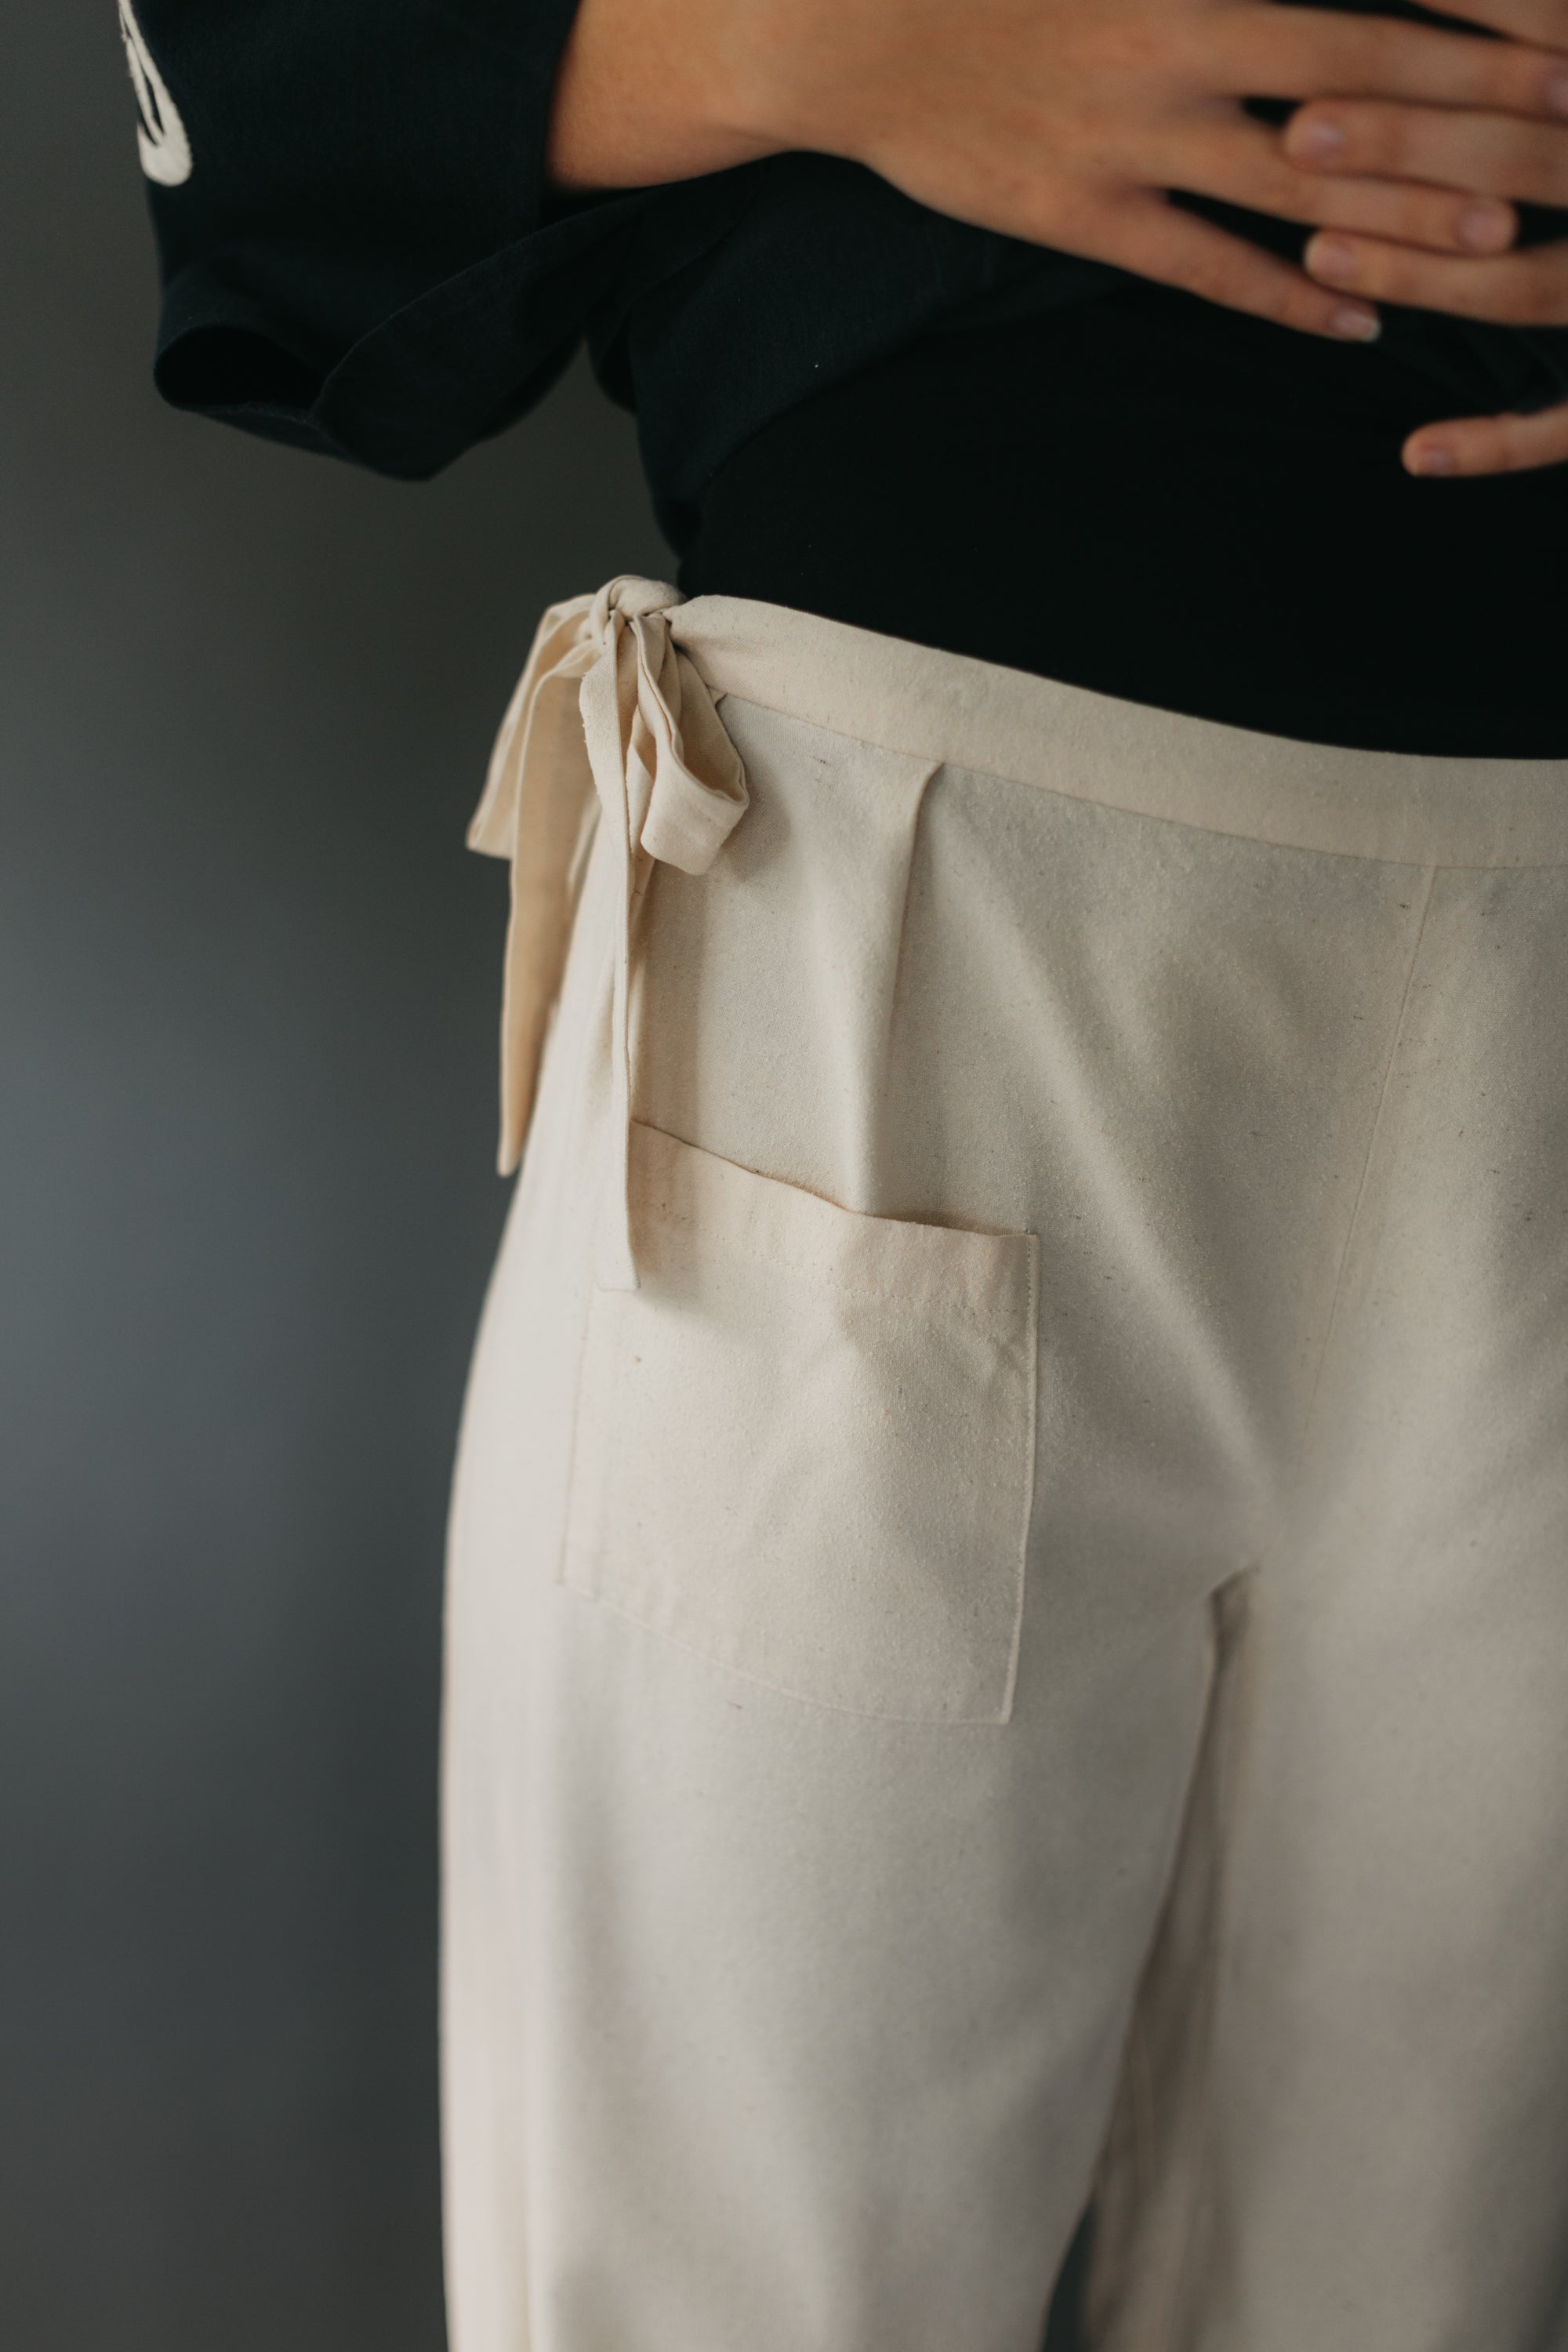 Close up of field pants pocket and ties at waist.